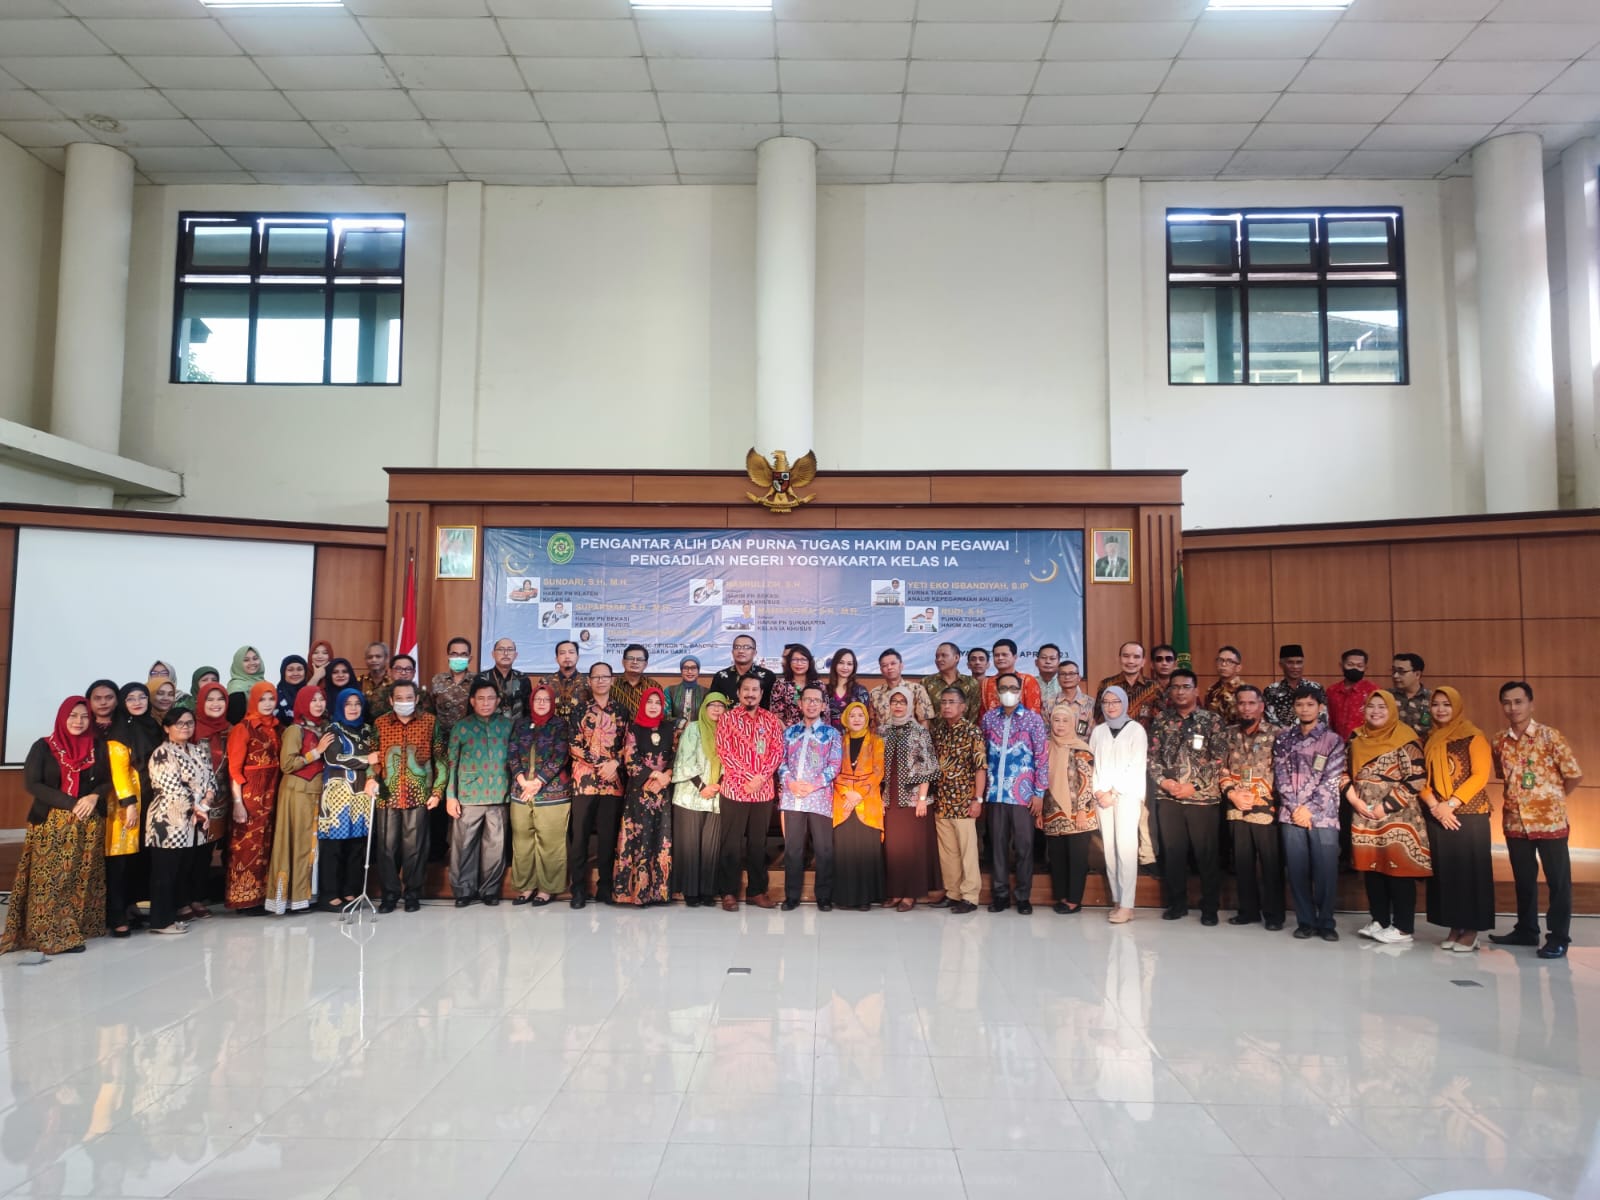 Pengantar Alih Tugas Hakim dan Purna Tugas Hakim Ad Hoc dan ASN Pengadilan Negeri Yogyakarta